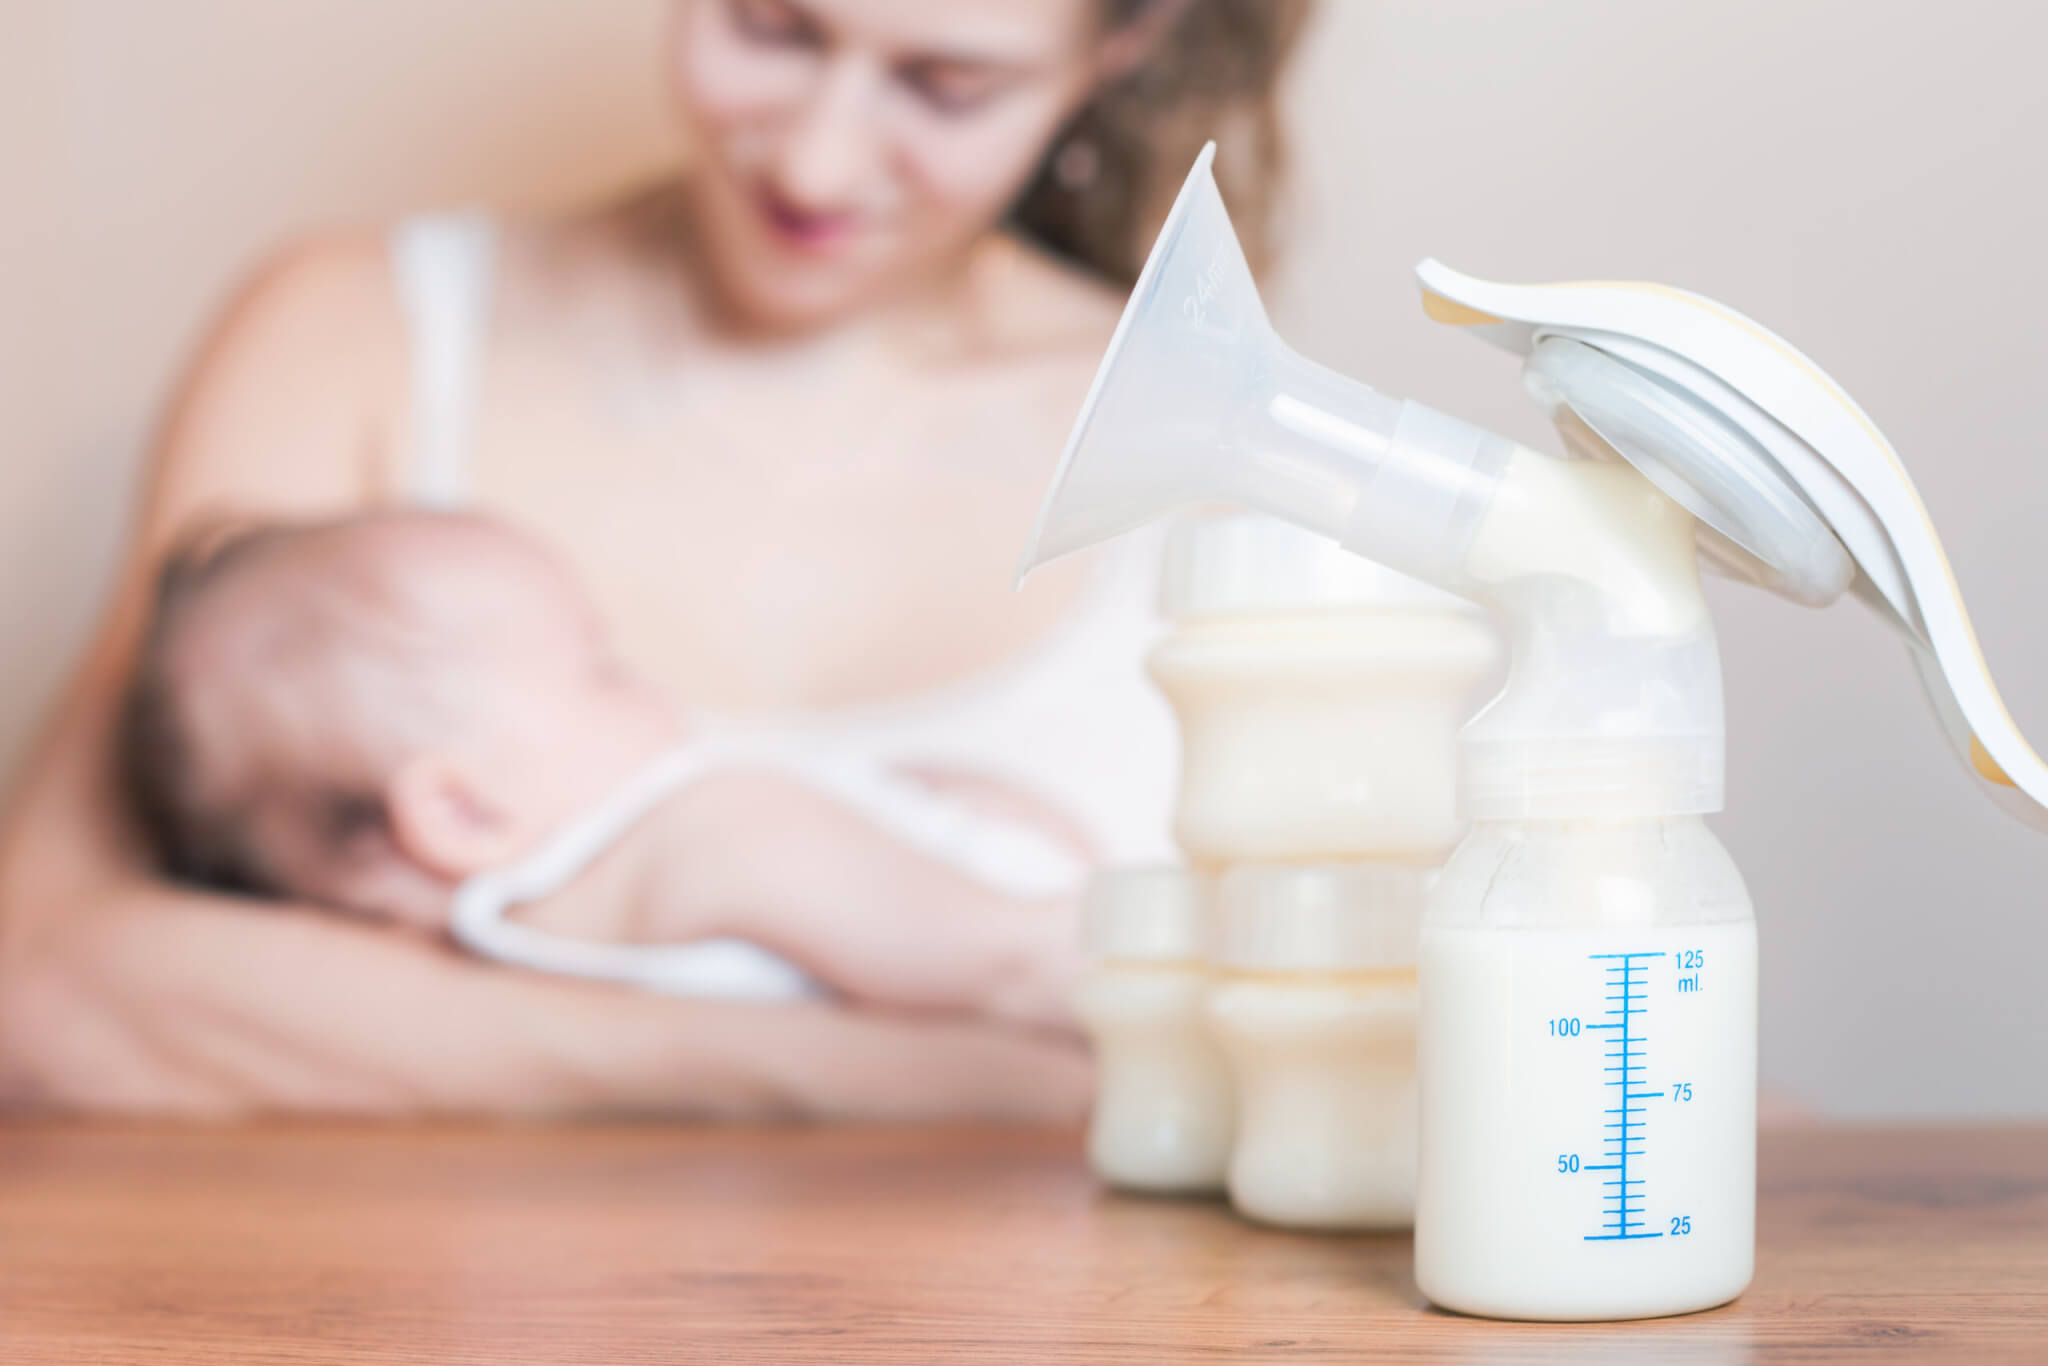  Spectra Baby USA - S1 Extractor de leche doble/simple eléctrico  de uso hospitalario. Batería recargable. : Bebés